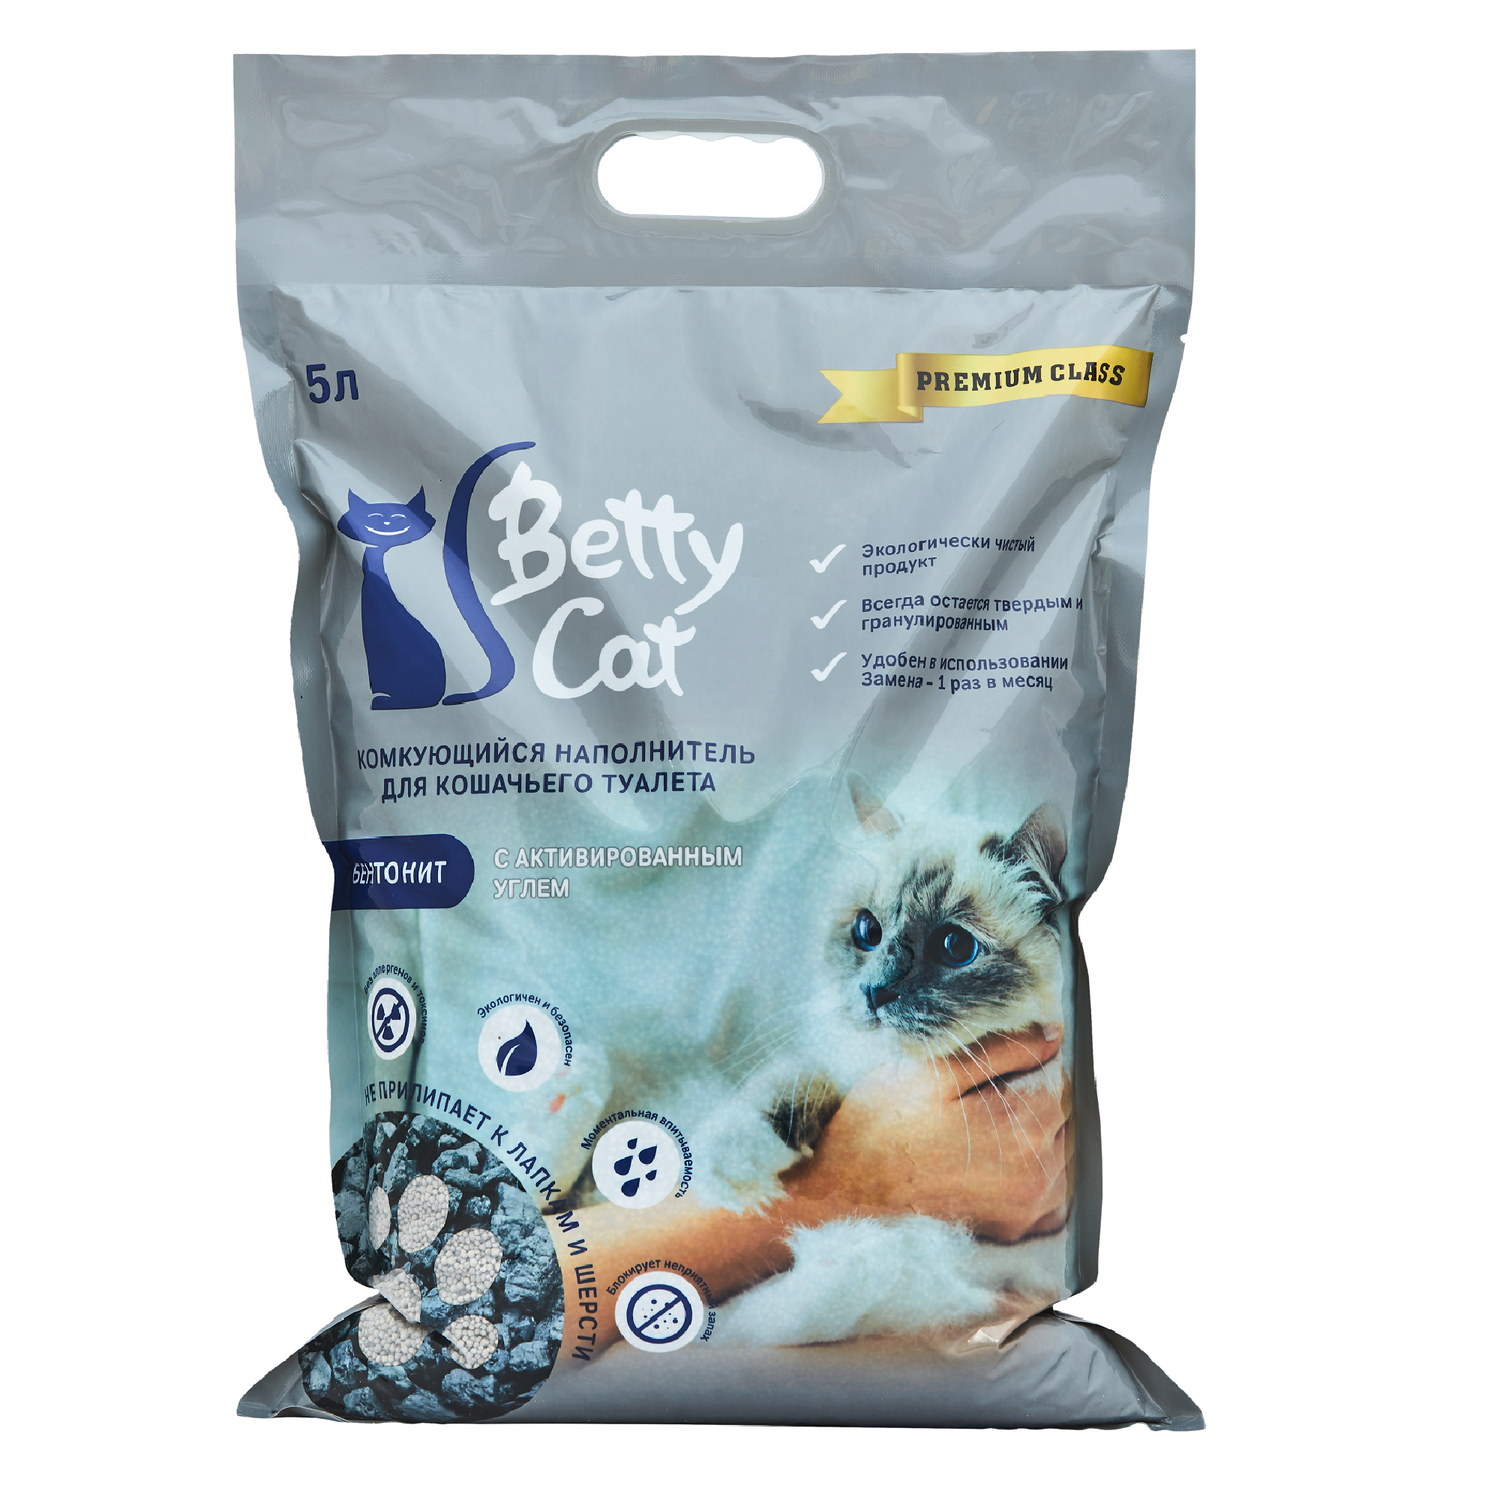 Наполнитель для кошек Betty Cat гигиенический активированный уголь 5 л - фото 1